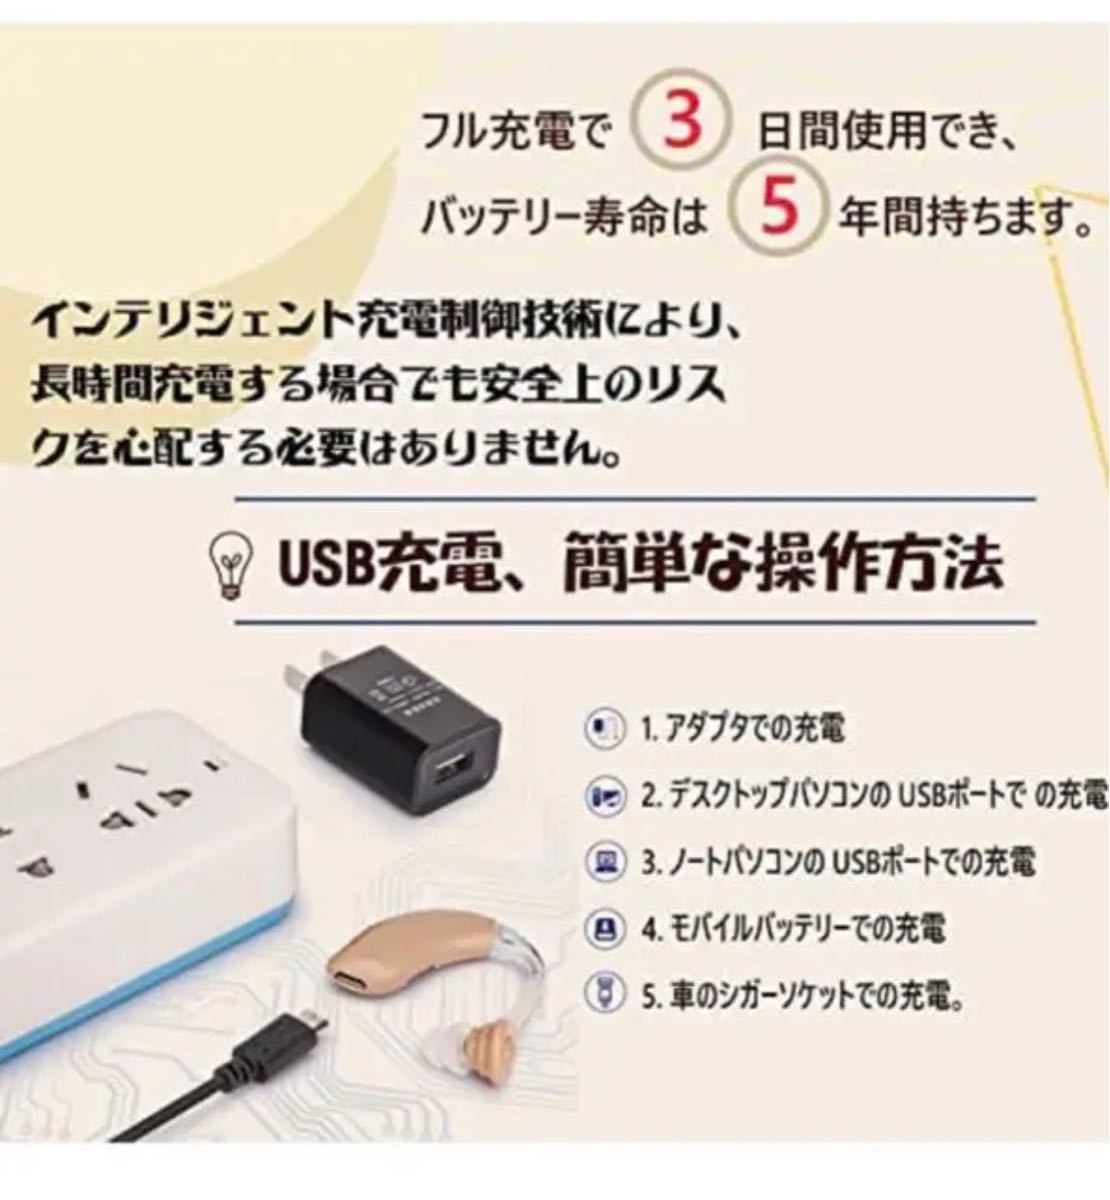  сборник звук контейнер заряжающийся легкий левый правый обе для 4 вид режим высота Kiyoshi качество звука режим переключатель японский язык есть руководство пользователя .( чай цвет )